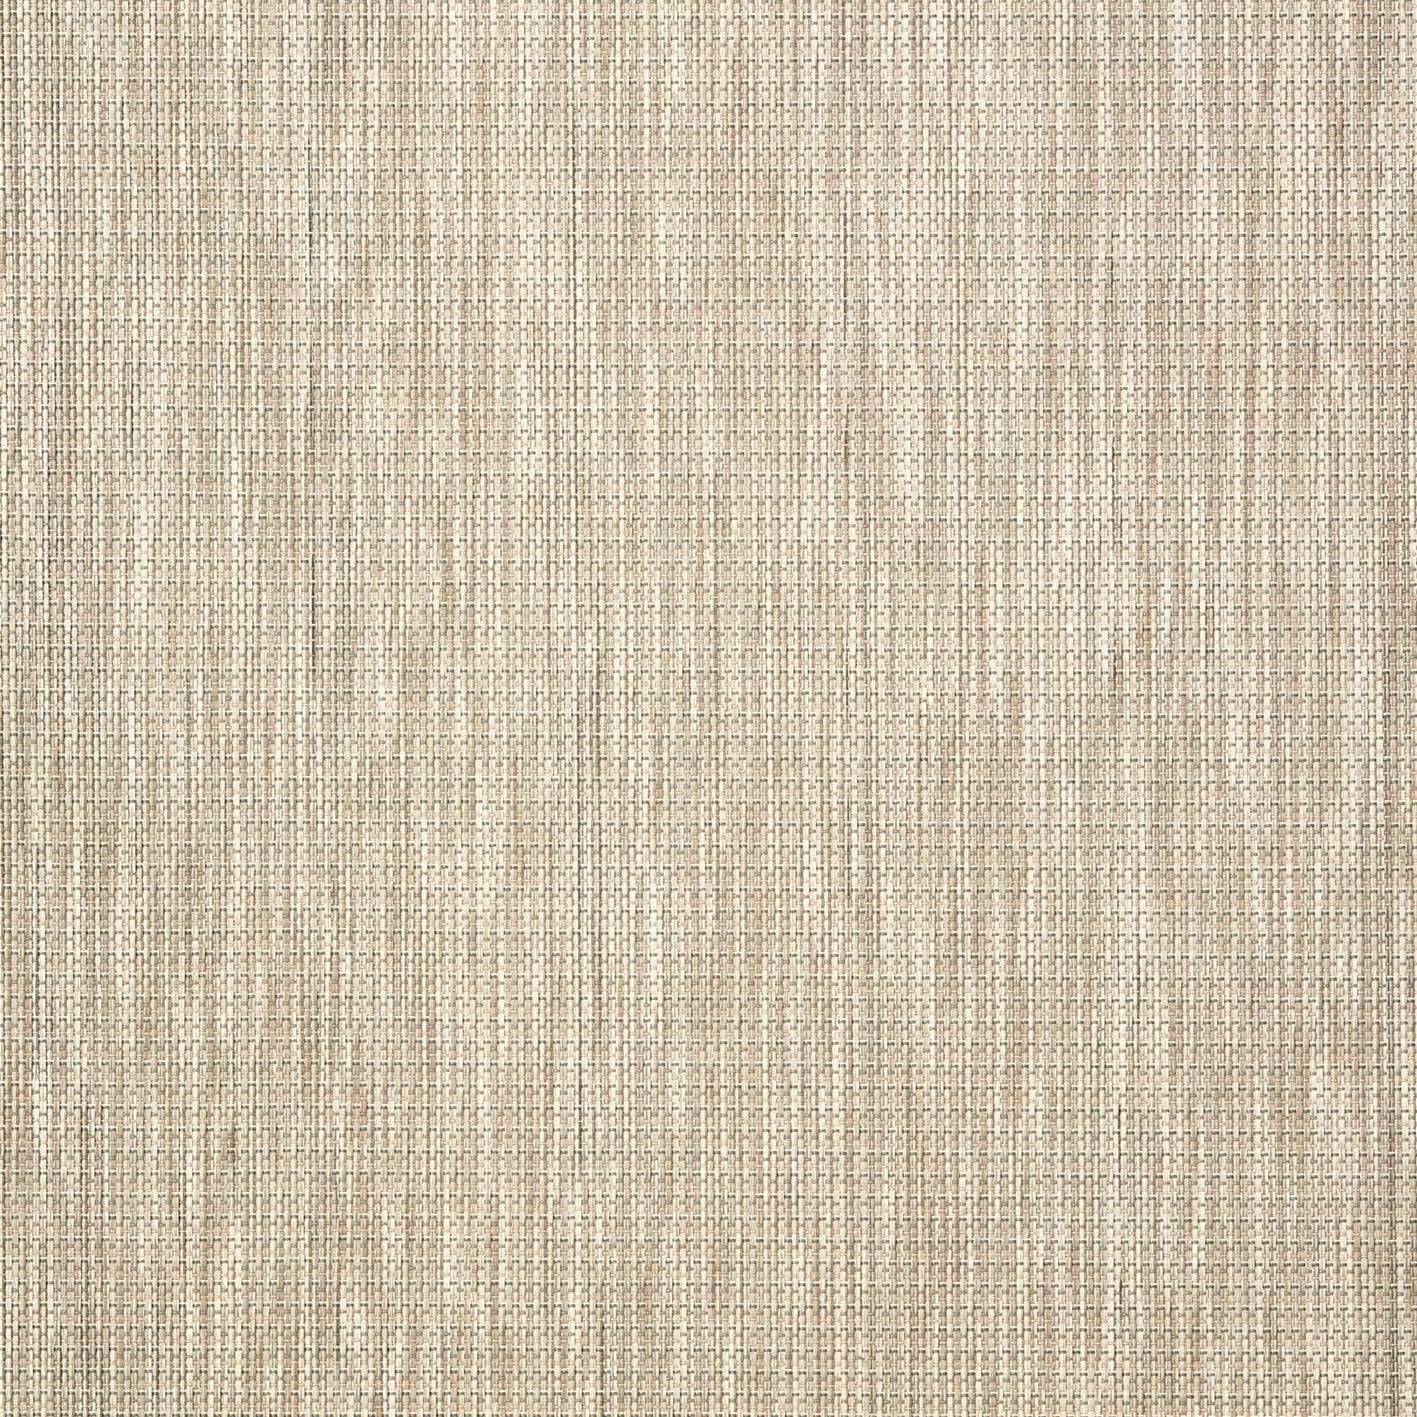 5801 川島織物セルコン 床タイル ウェイフロア ペイトン 川島織物セルコン フロアタイル